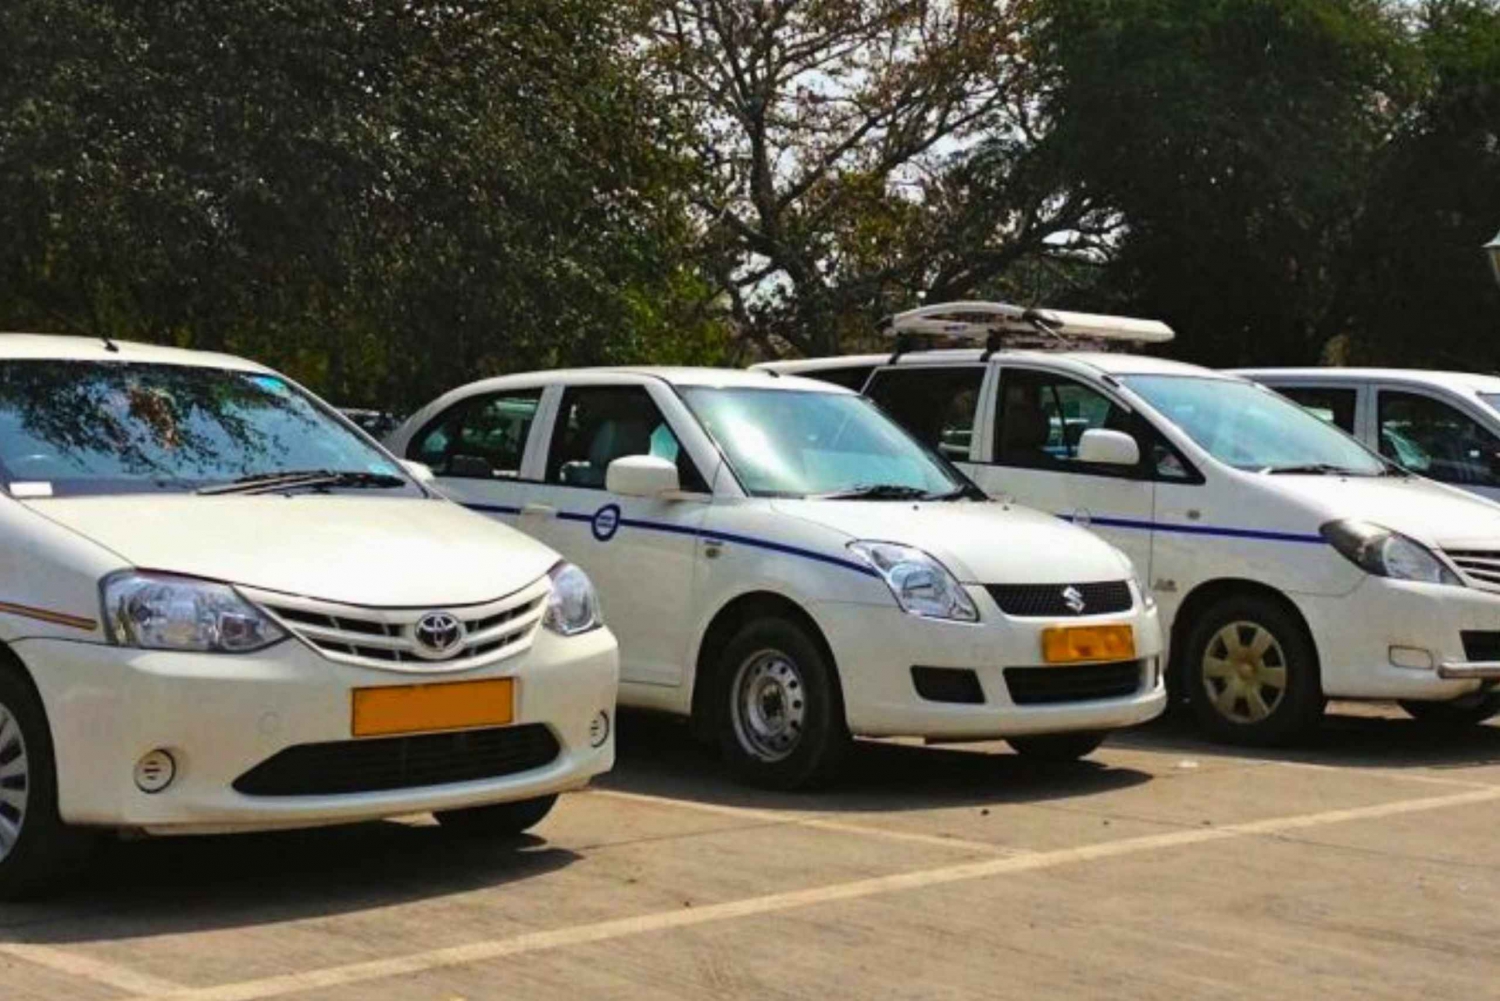 Transfert aller simple : Delhi/Agra/Jaipur en voiture privée